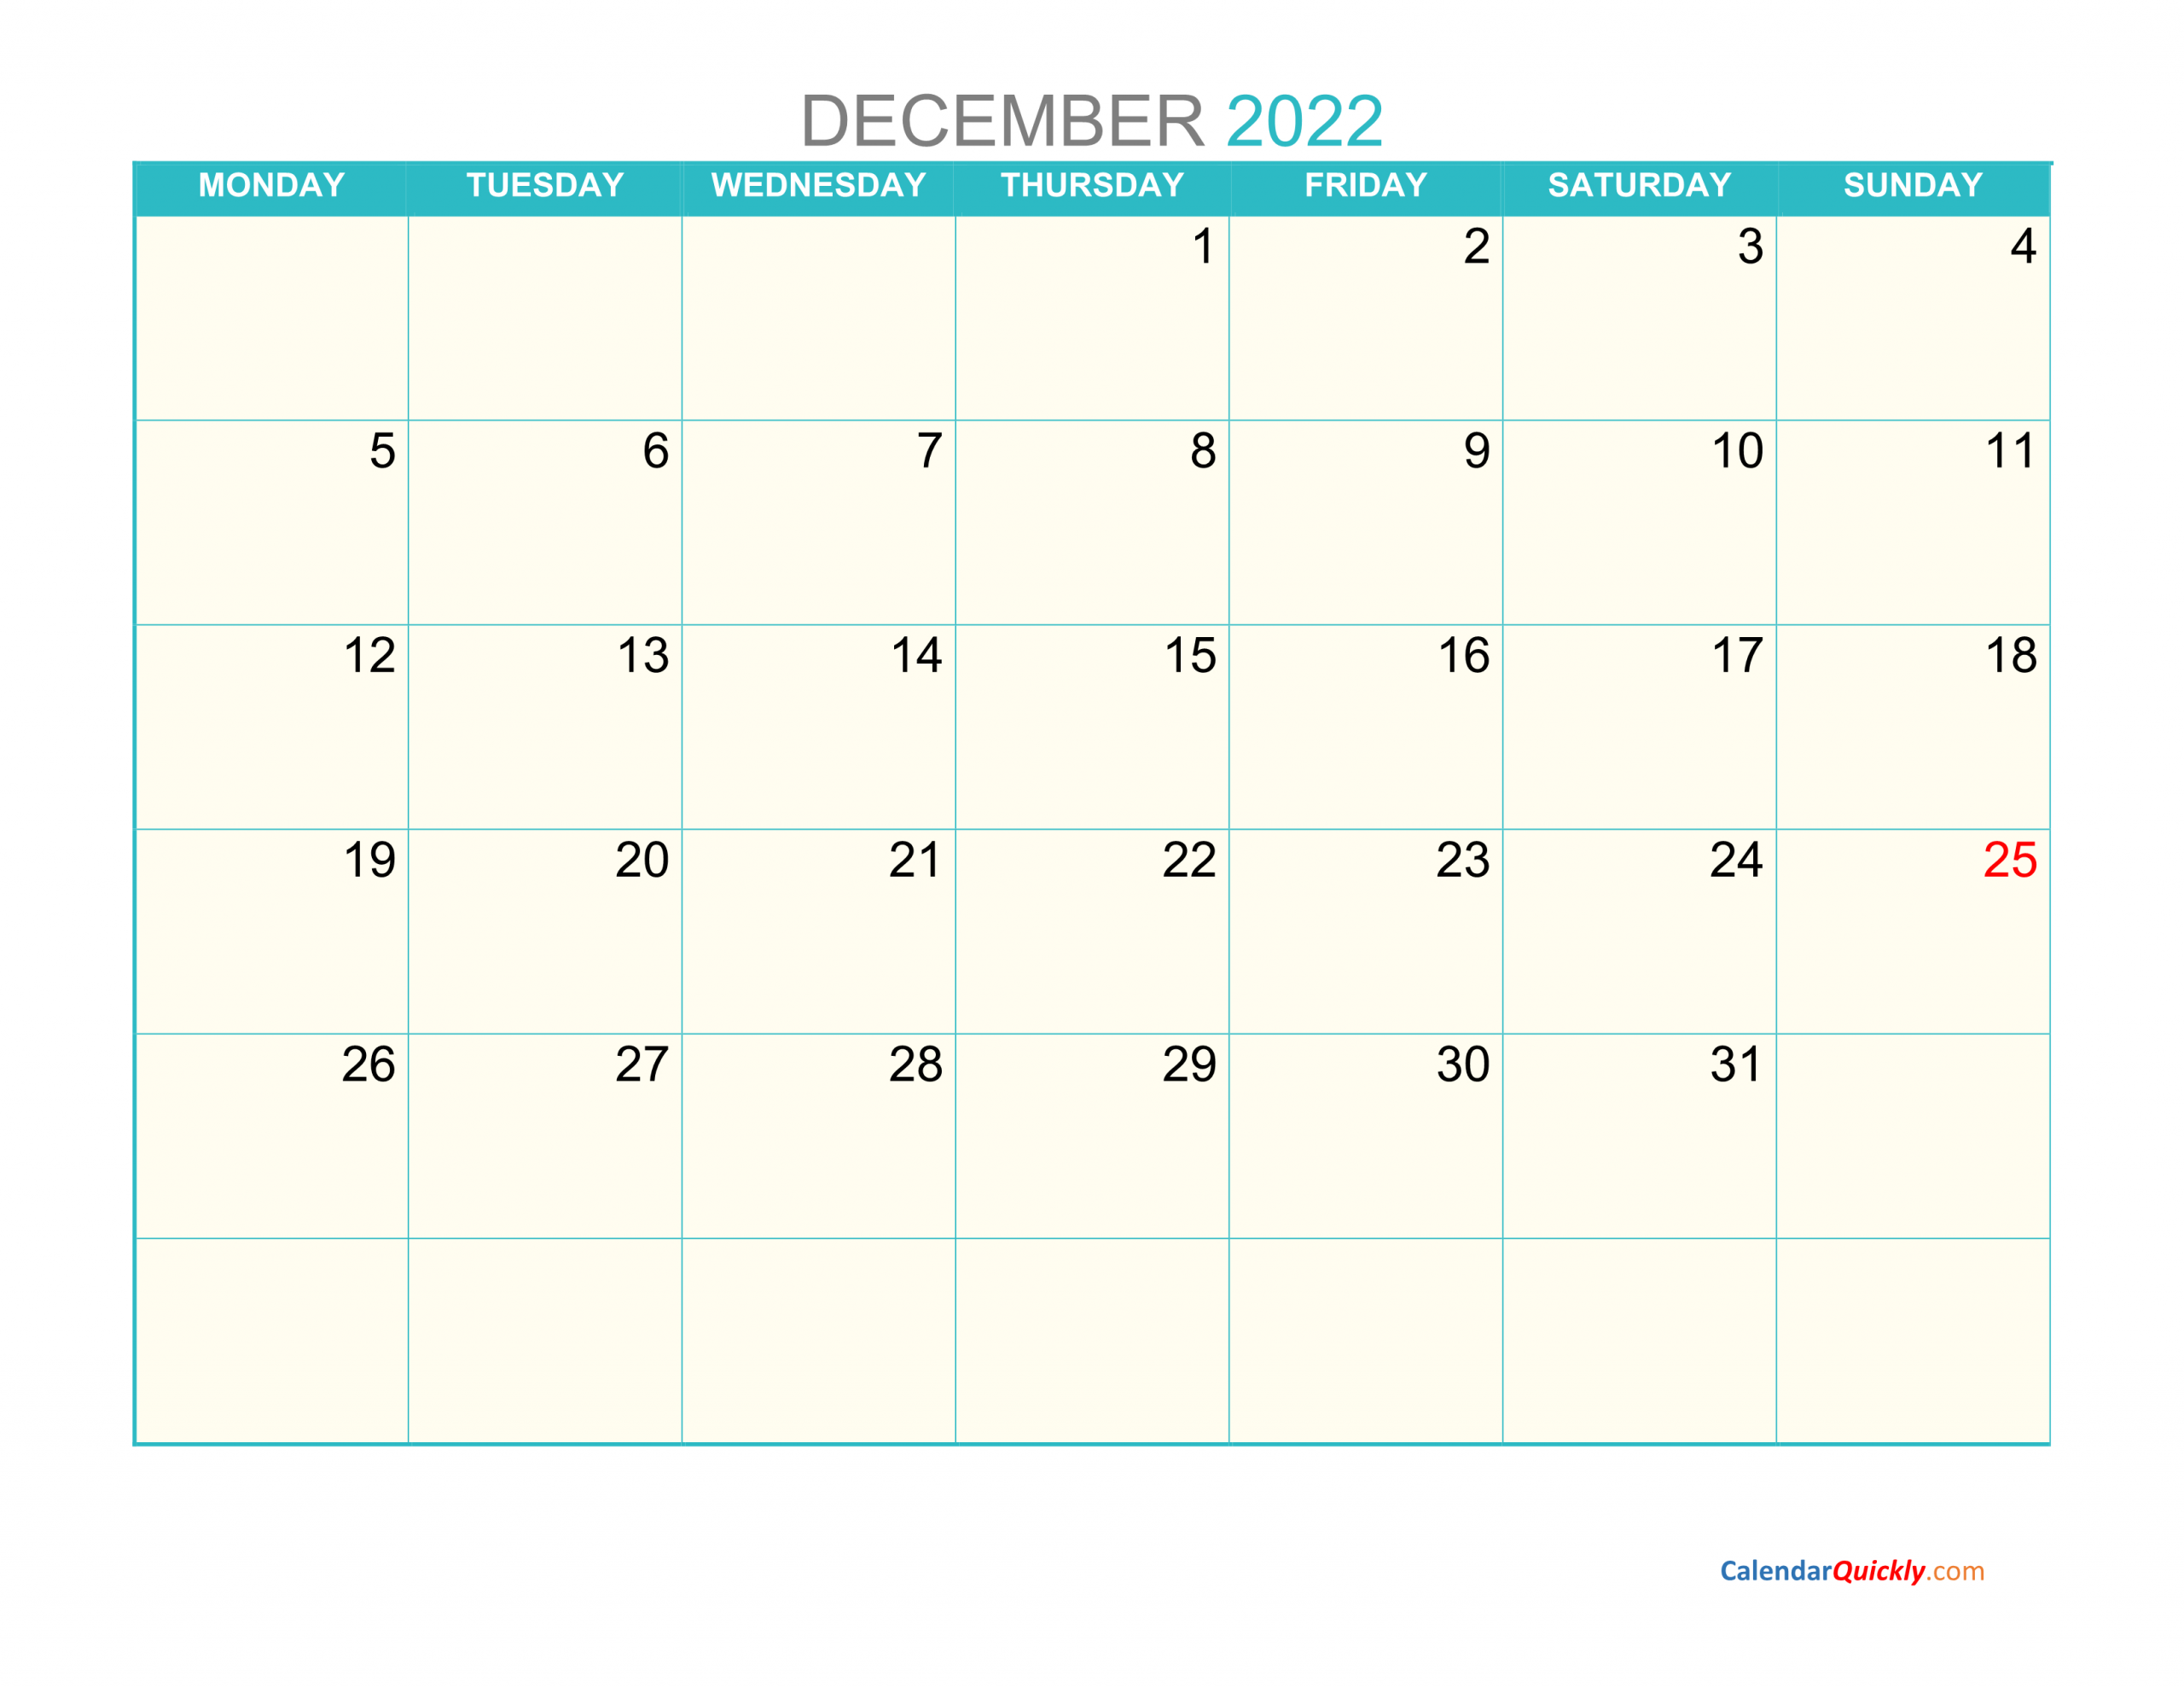 December Monday 2022 Calendar Printable | Calendar Quickly Printable Calendar December 2022